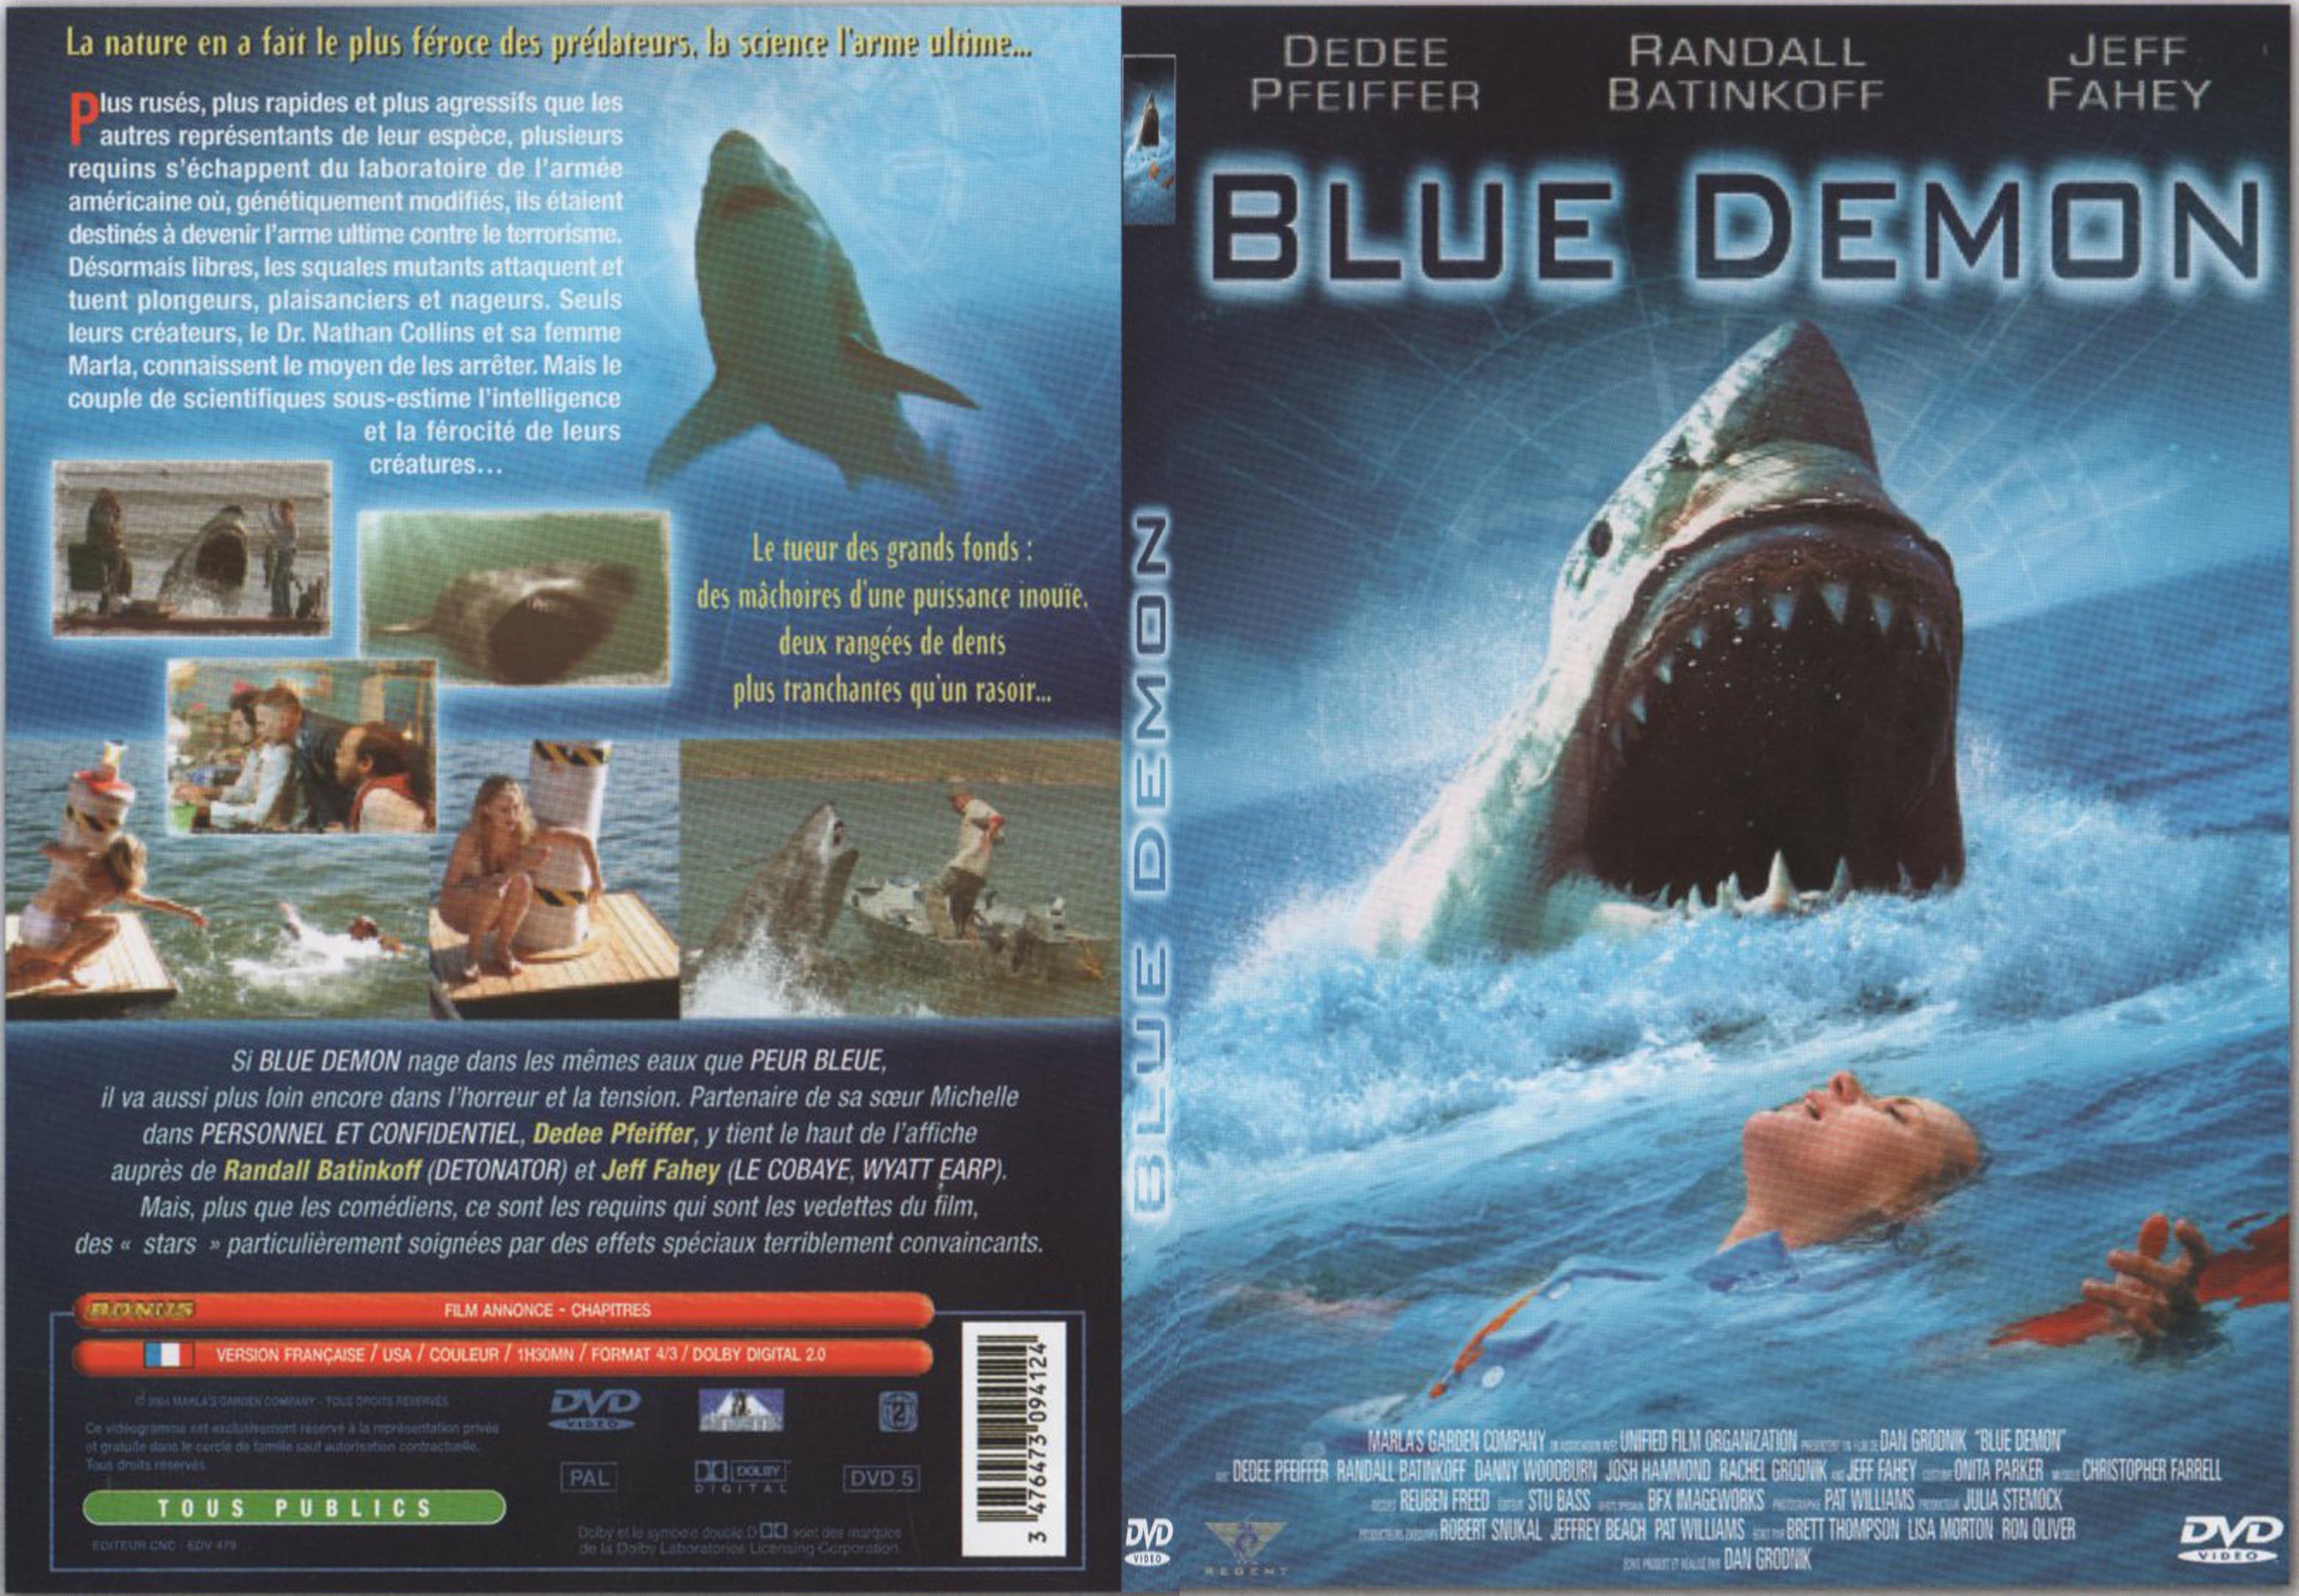 Jaquette DVD Blue demon - SLIM